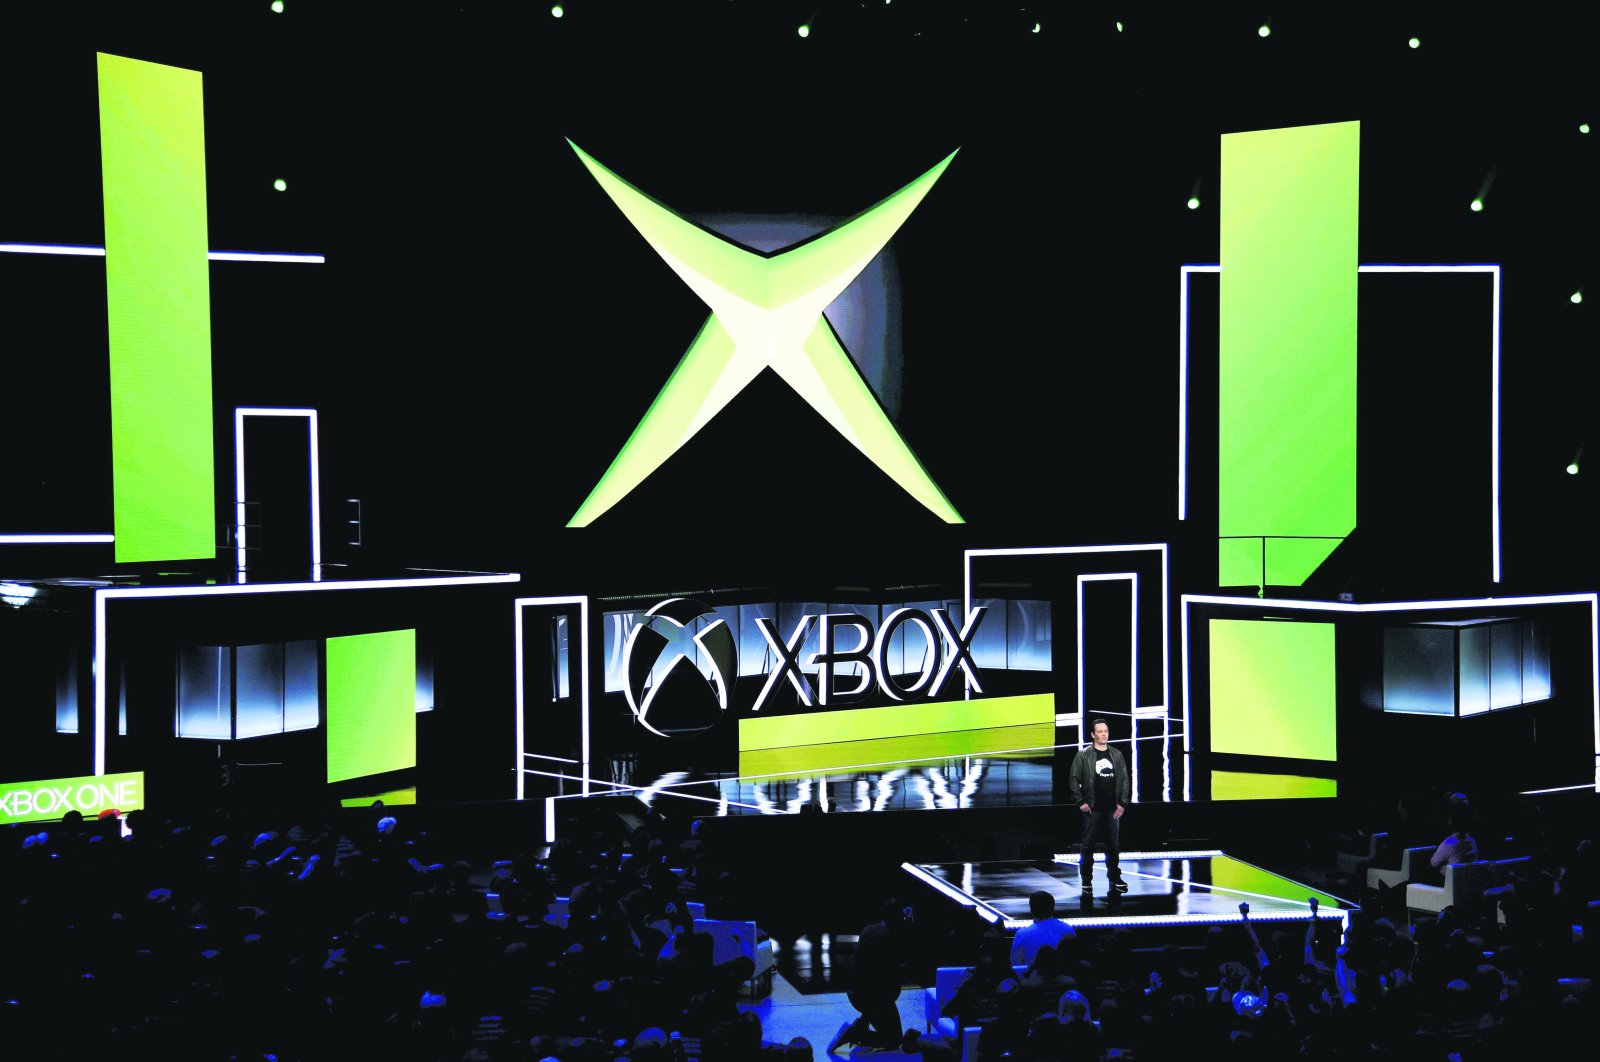 Aplikasi pembunuh: Video game ‘Halo’ baru memulai debutnya saat Xbox berusia 20